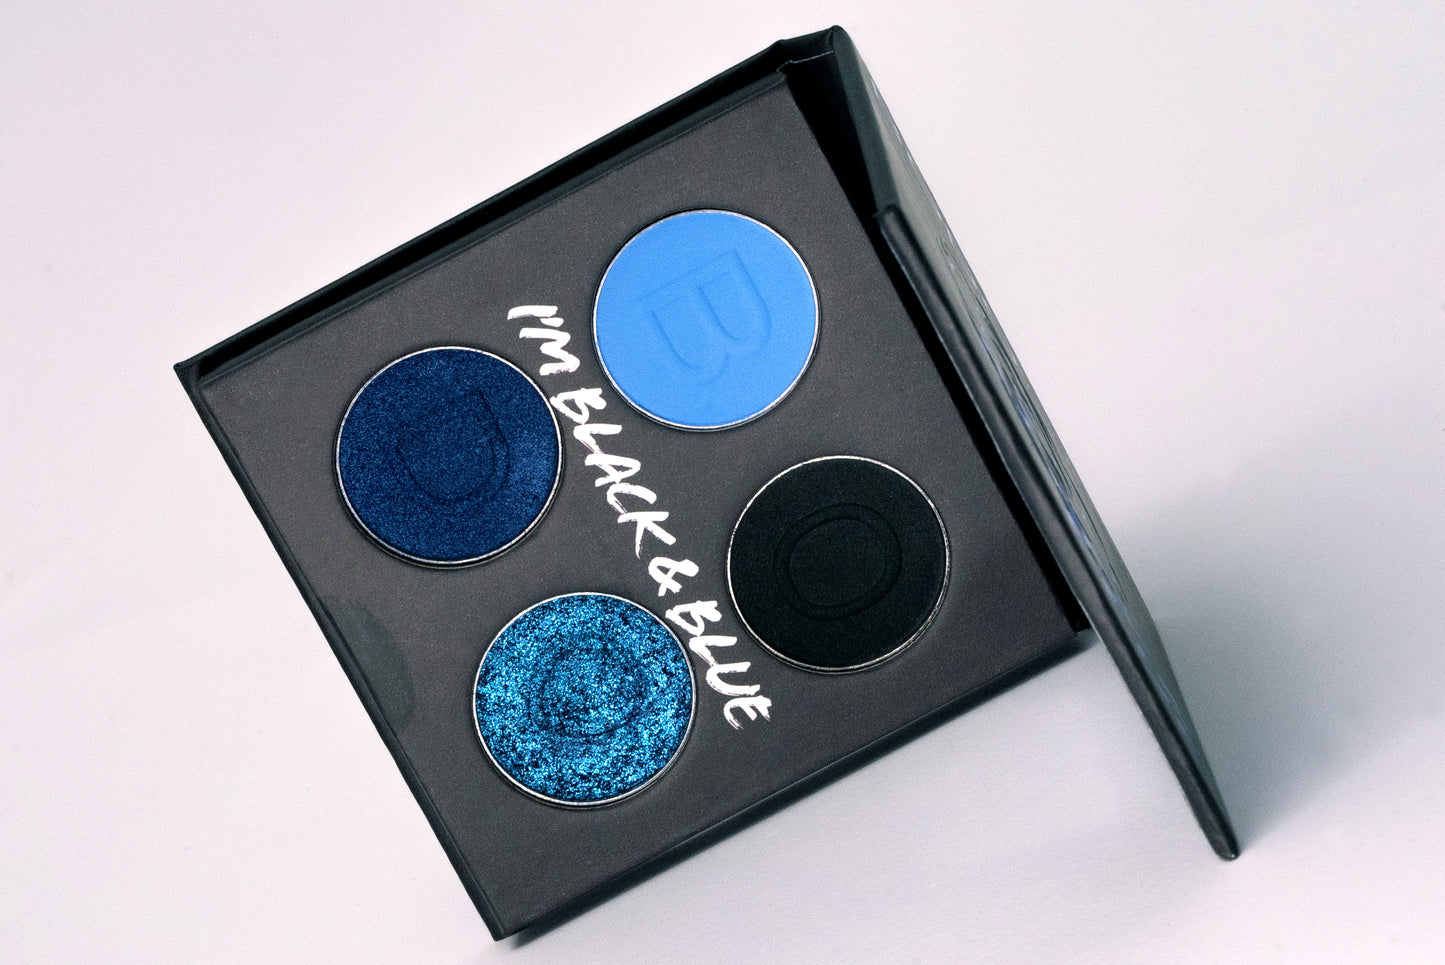 Black & Blue Eyeshadow Palette (4 colors)